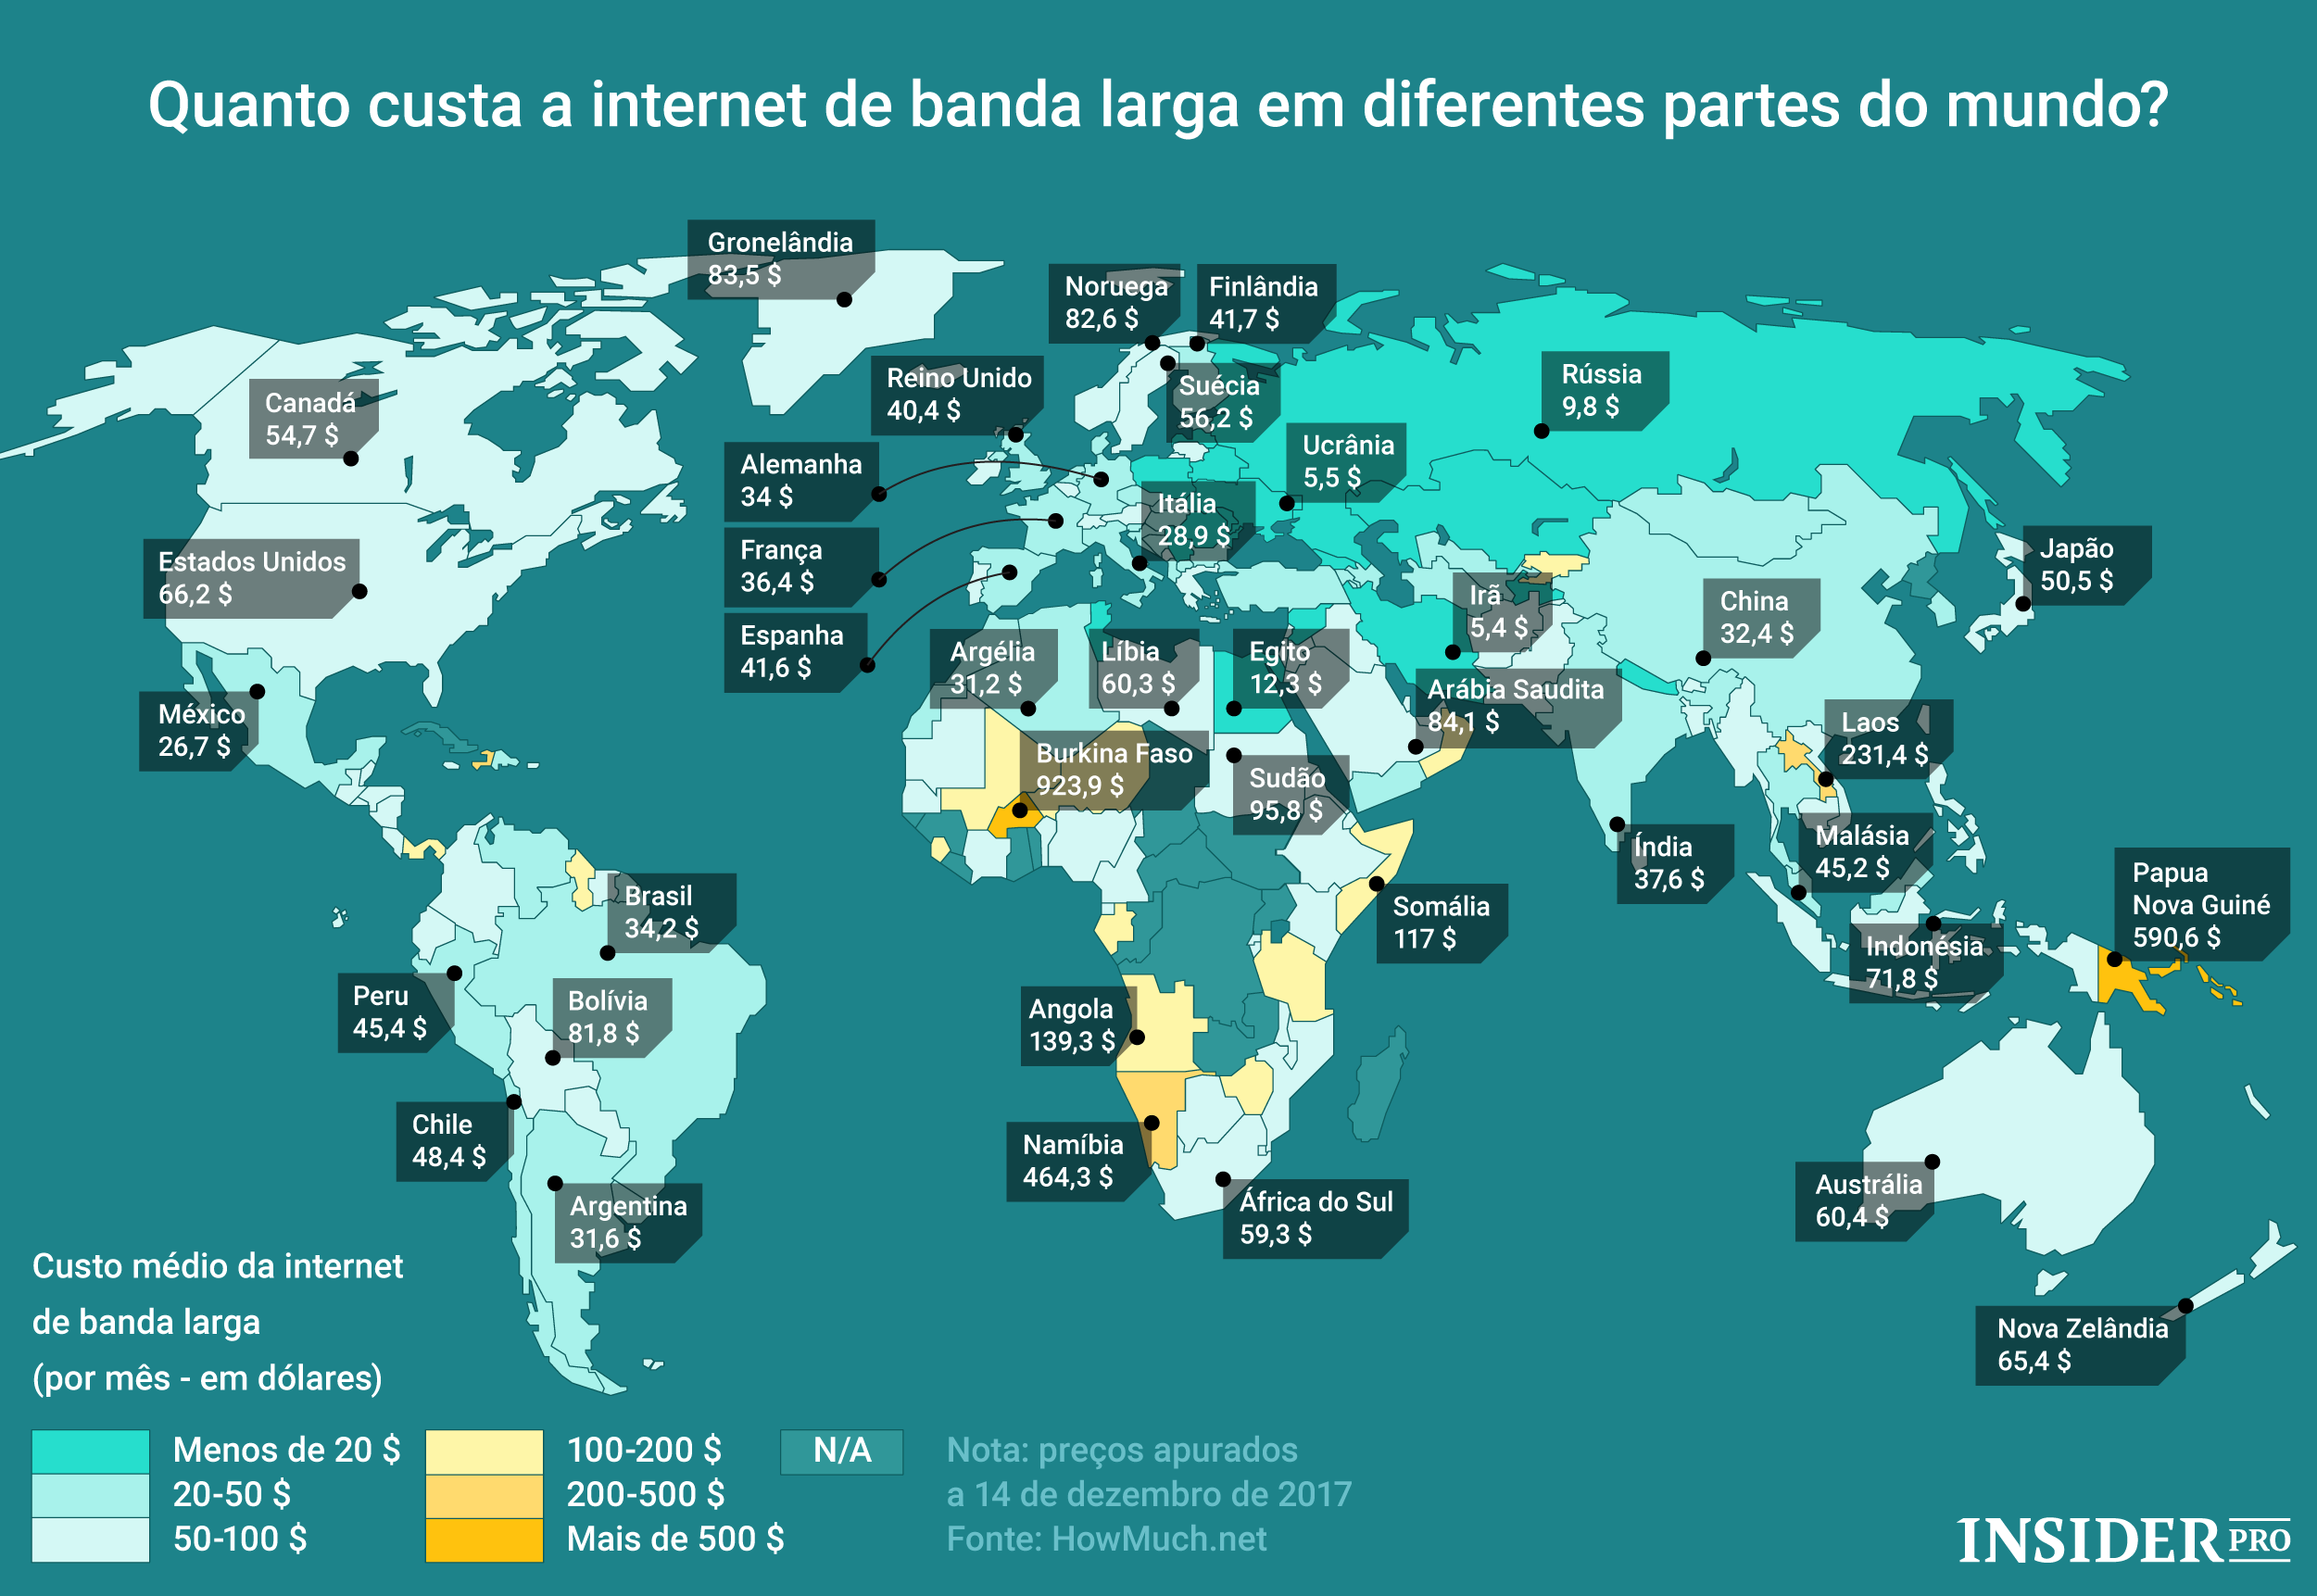 Раньше чем в других странах. Доступность интернета в мире. Интернет в разных странах. Интернет в других странах. Стоимость интернета в мире.